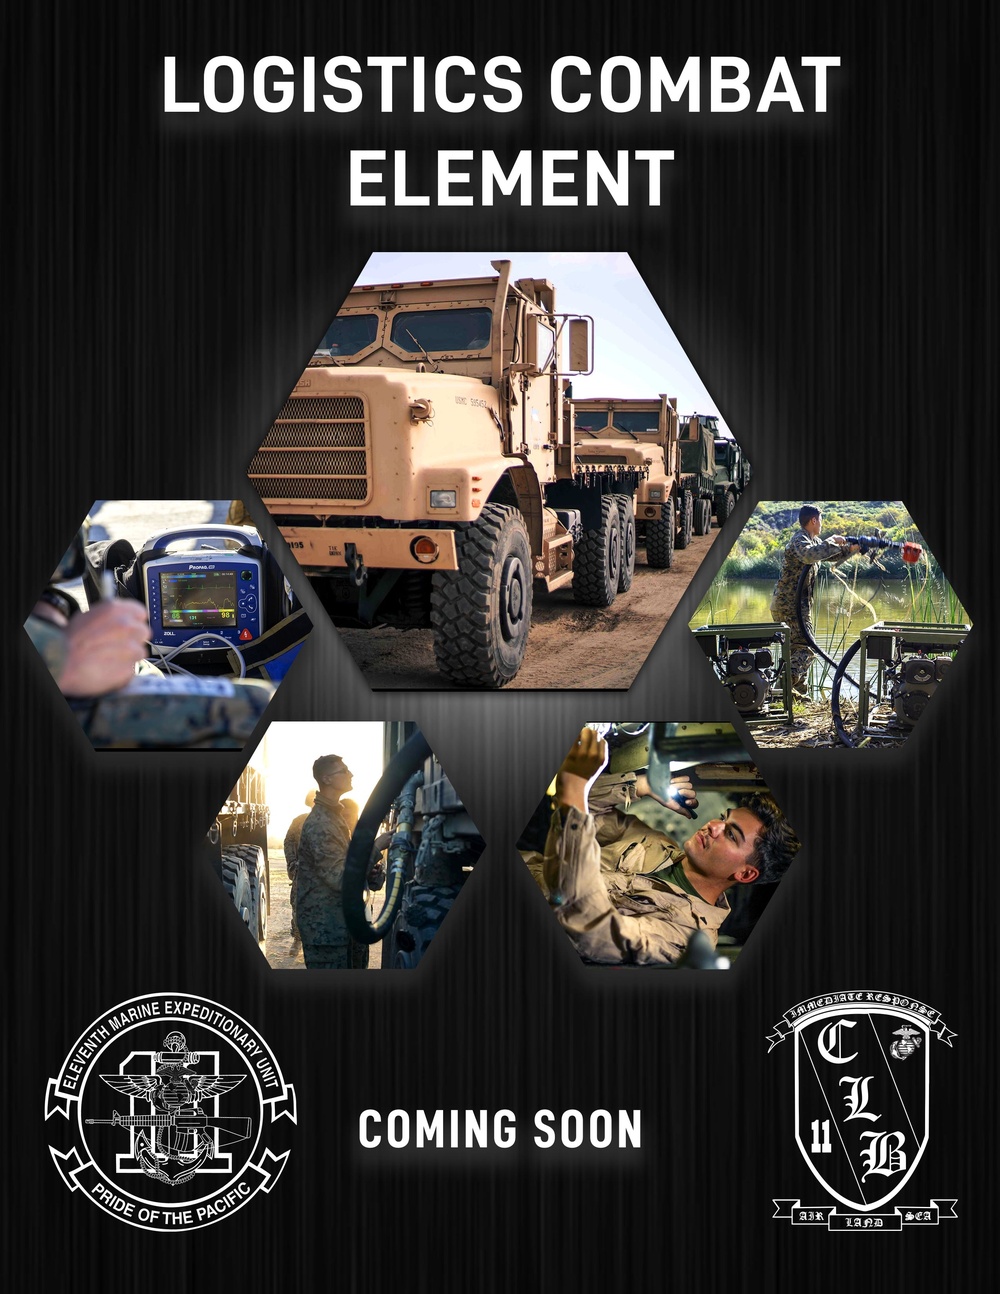 The Logistics Combat Element